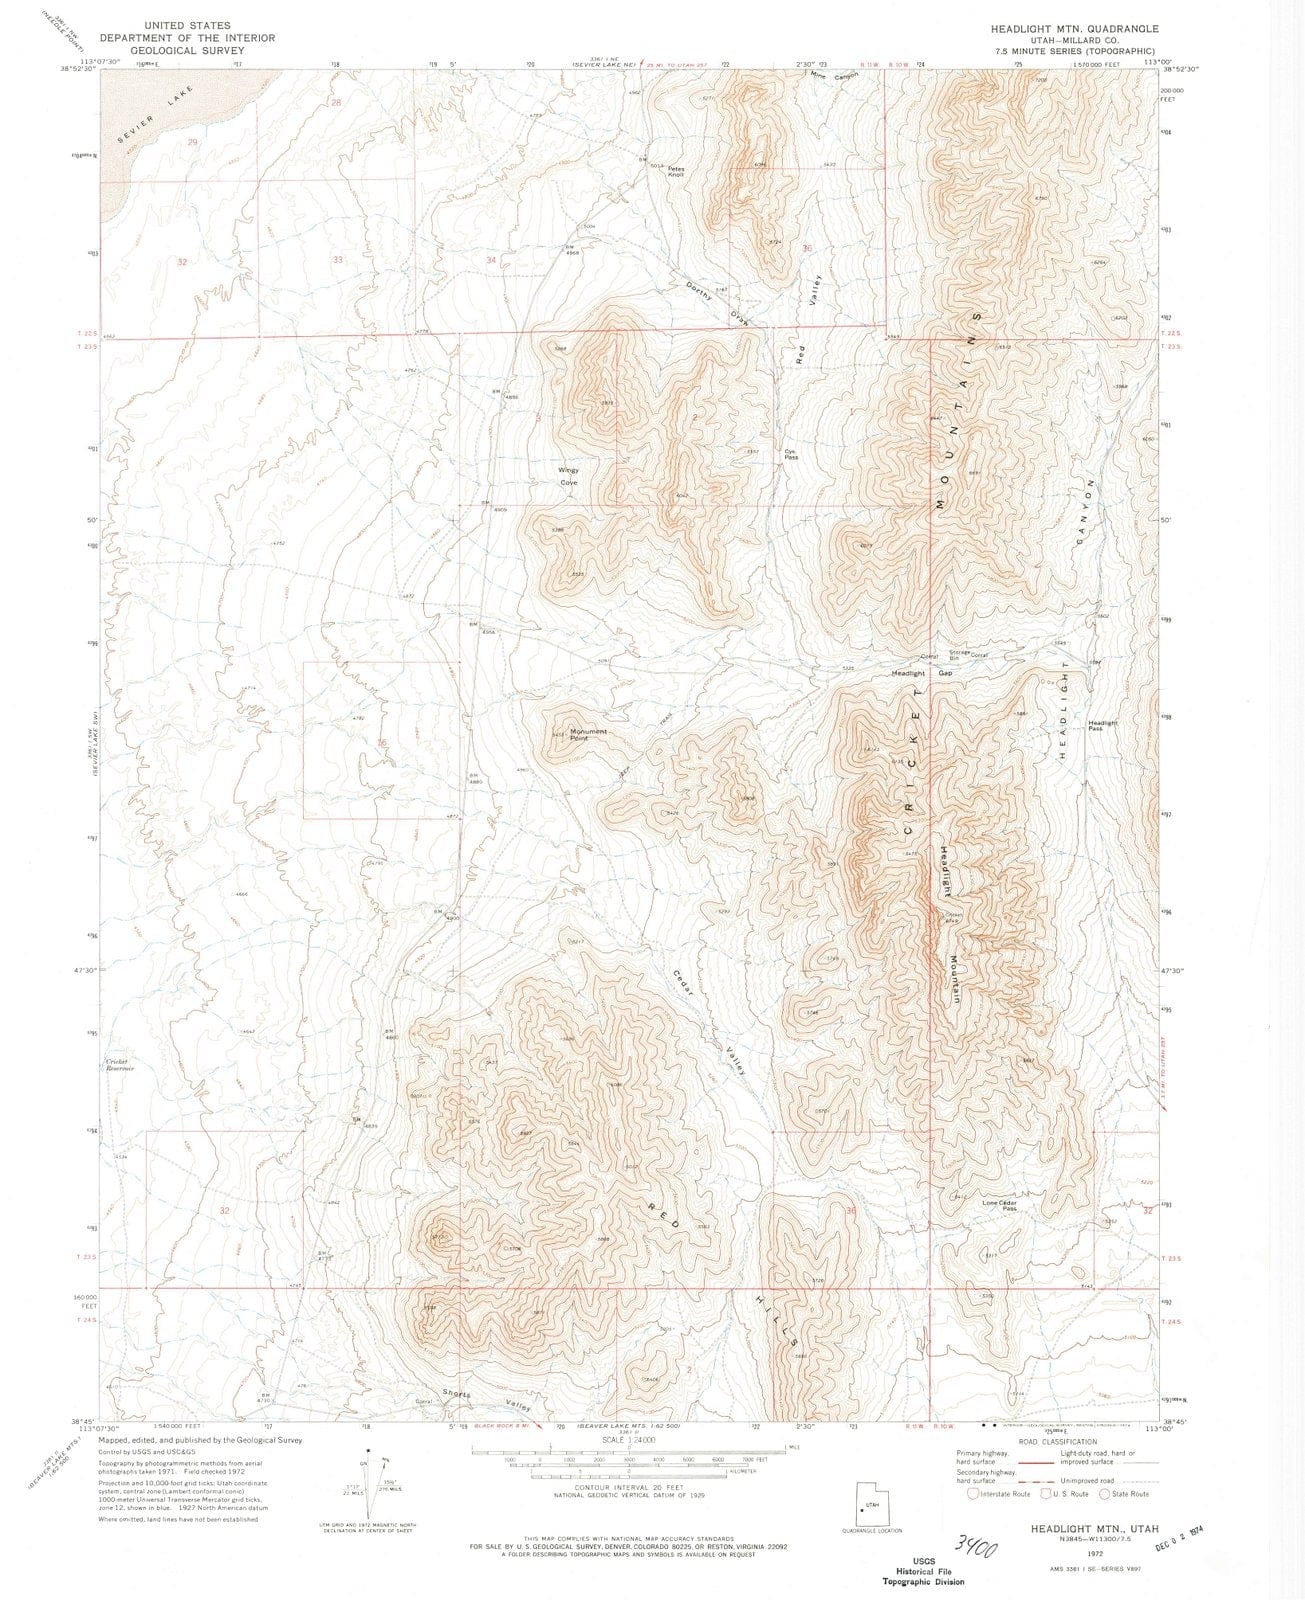 1972 Headlight MTN, UT - Utah - USGS Topographic Map